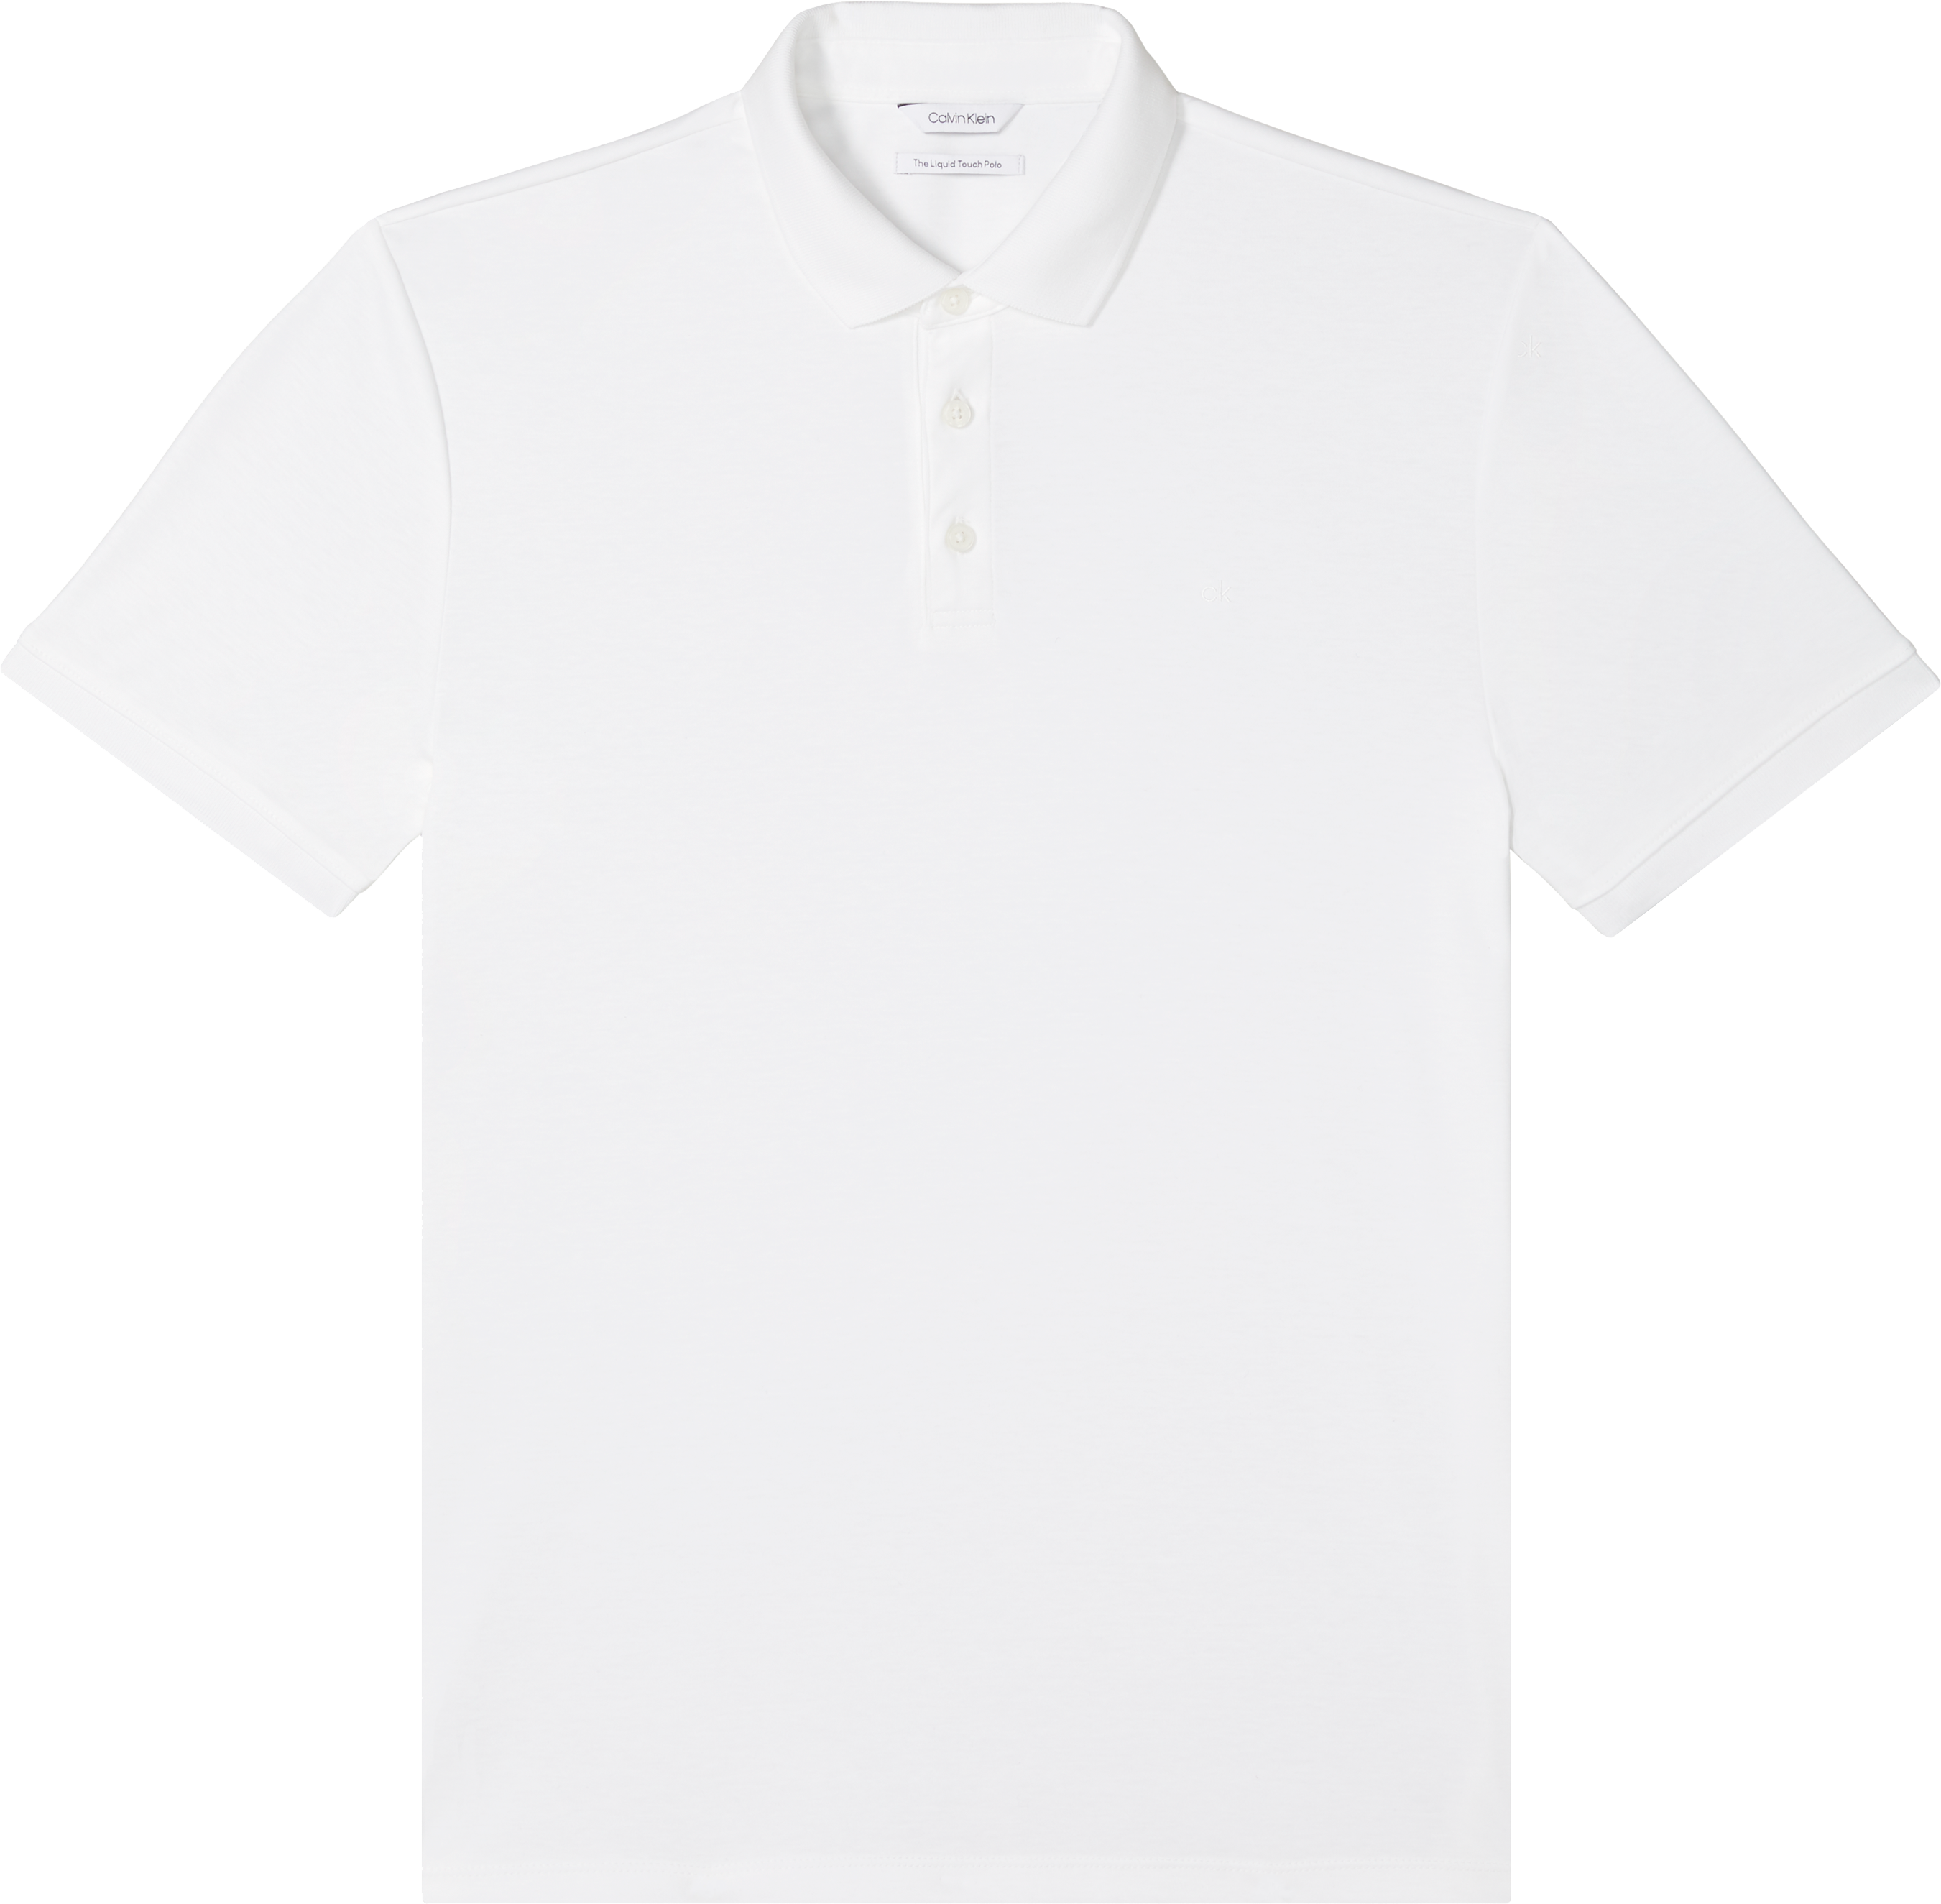 Calvin Klein Liquid Touch Modern Fit Polo Shirt, White - Men's Shirts ...